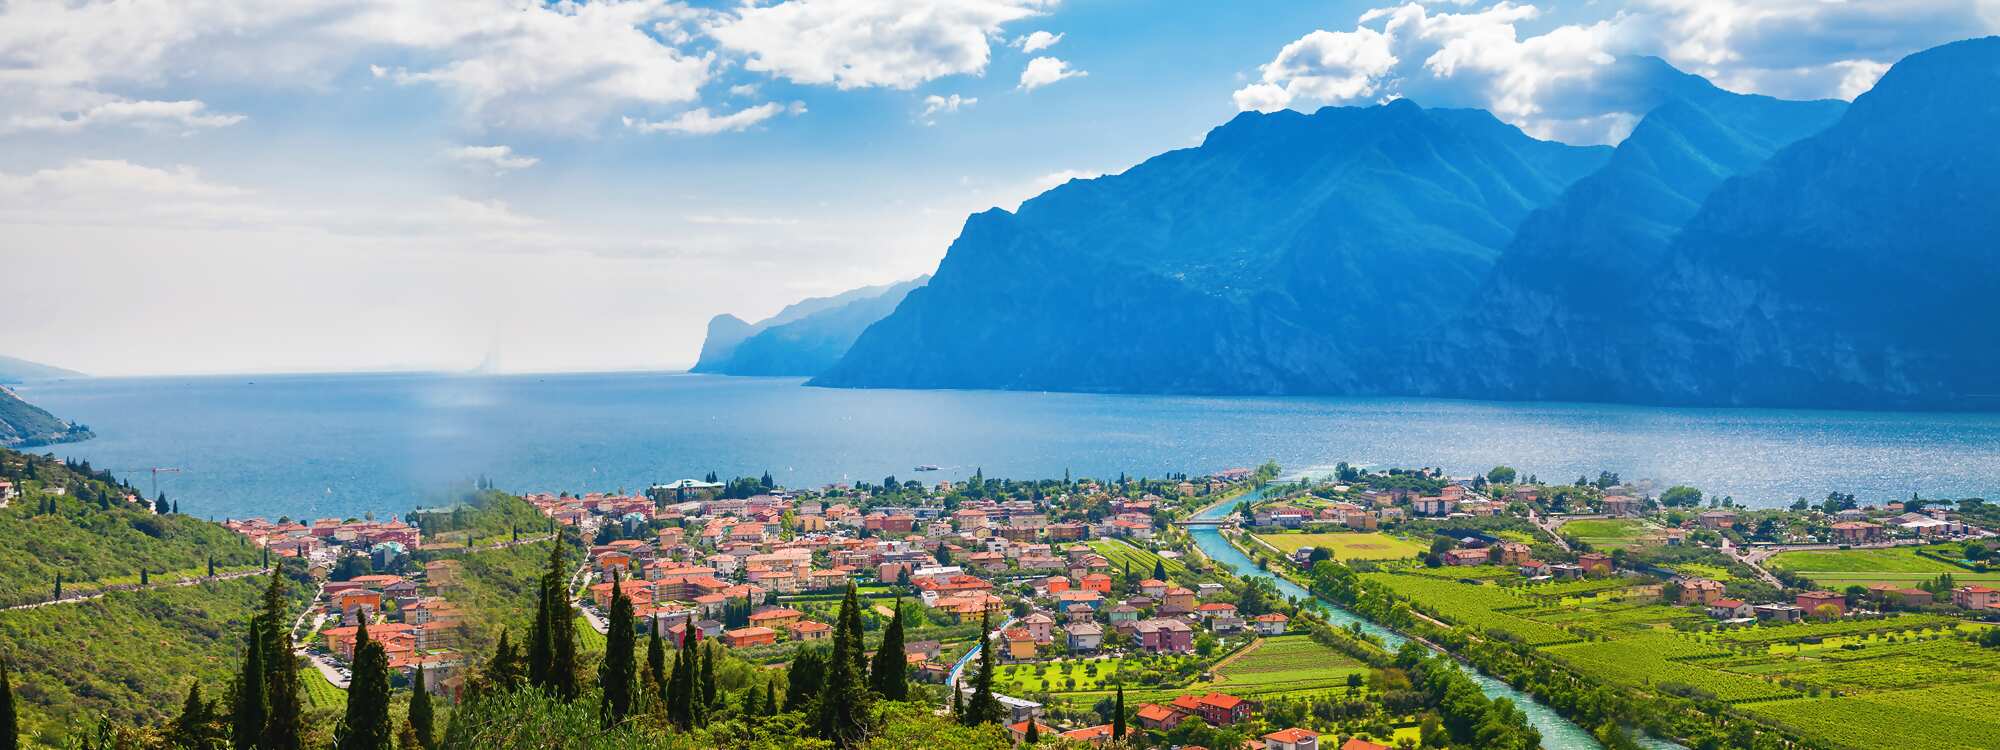 Nago-Torbole ist eine italienische Gemeinde mit 2852 Einwohnern in der Provinz Trient in der Region Gardasee